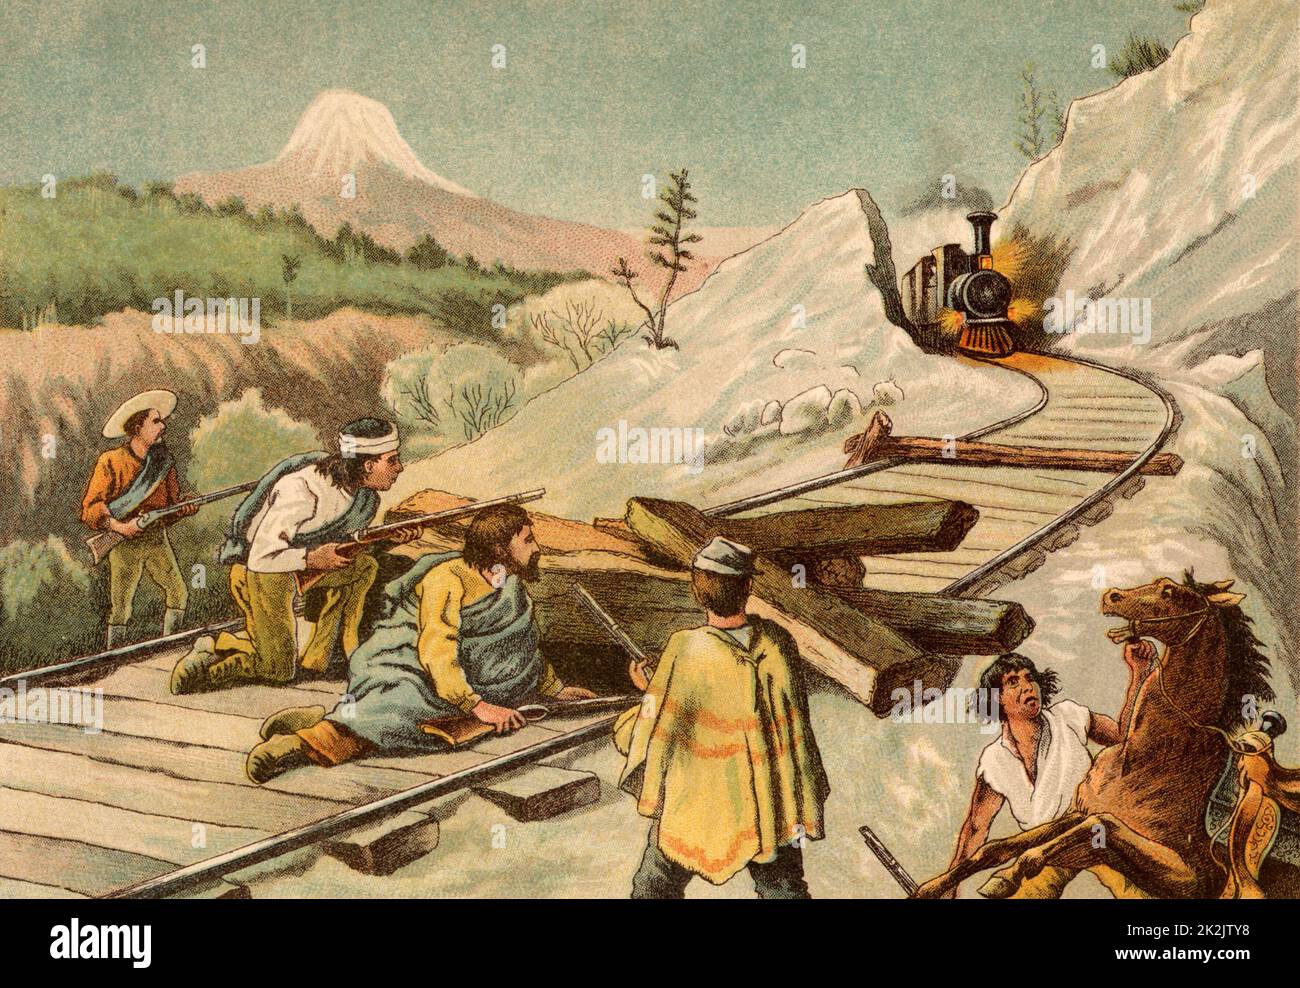 Des bandits embuent un train dans la région du New Hampshire-Maine aux États-Unis. Chromolithographe de 'Young England' (Londres, 1888). Banque D'Images